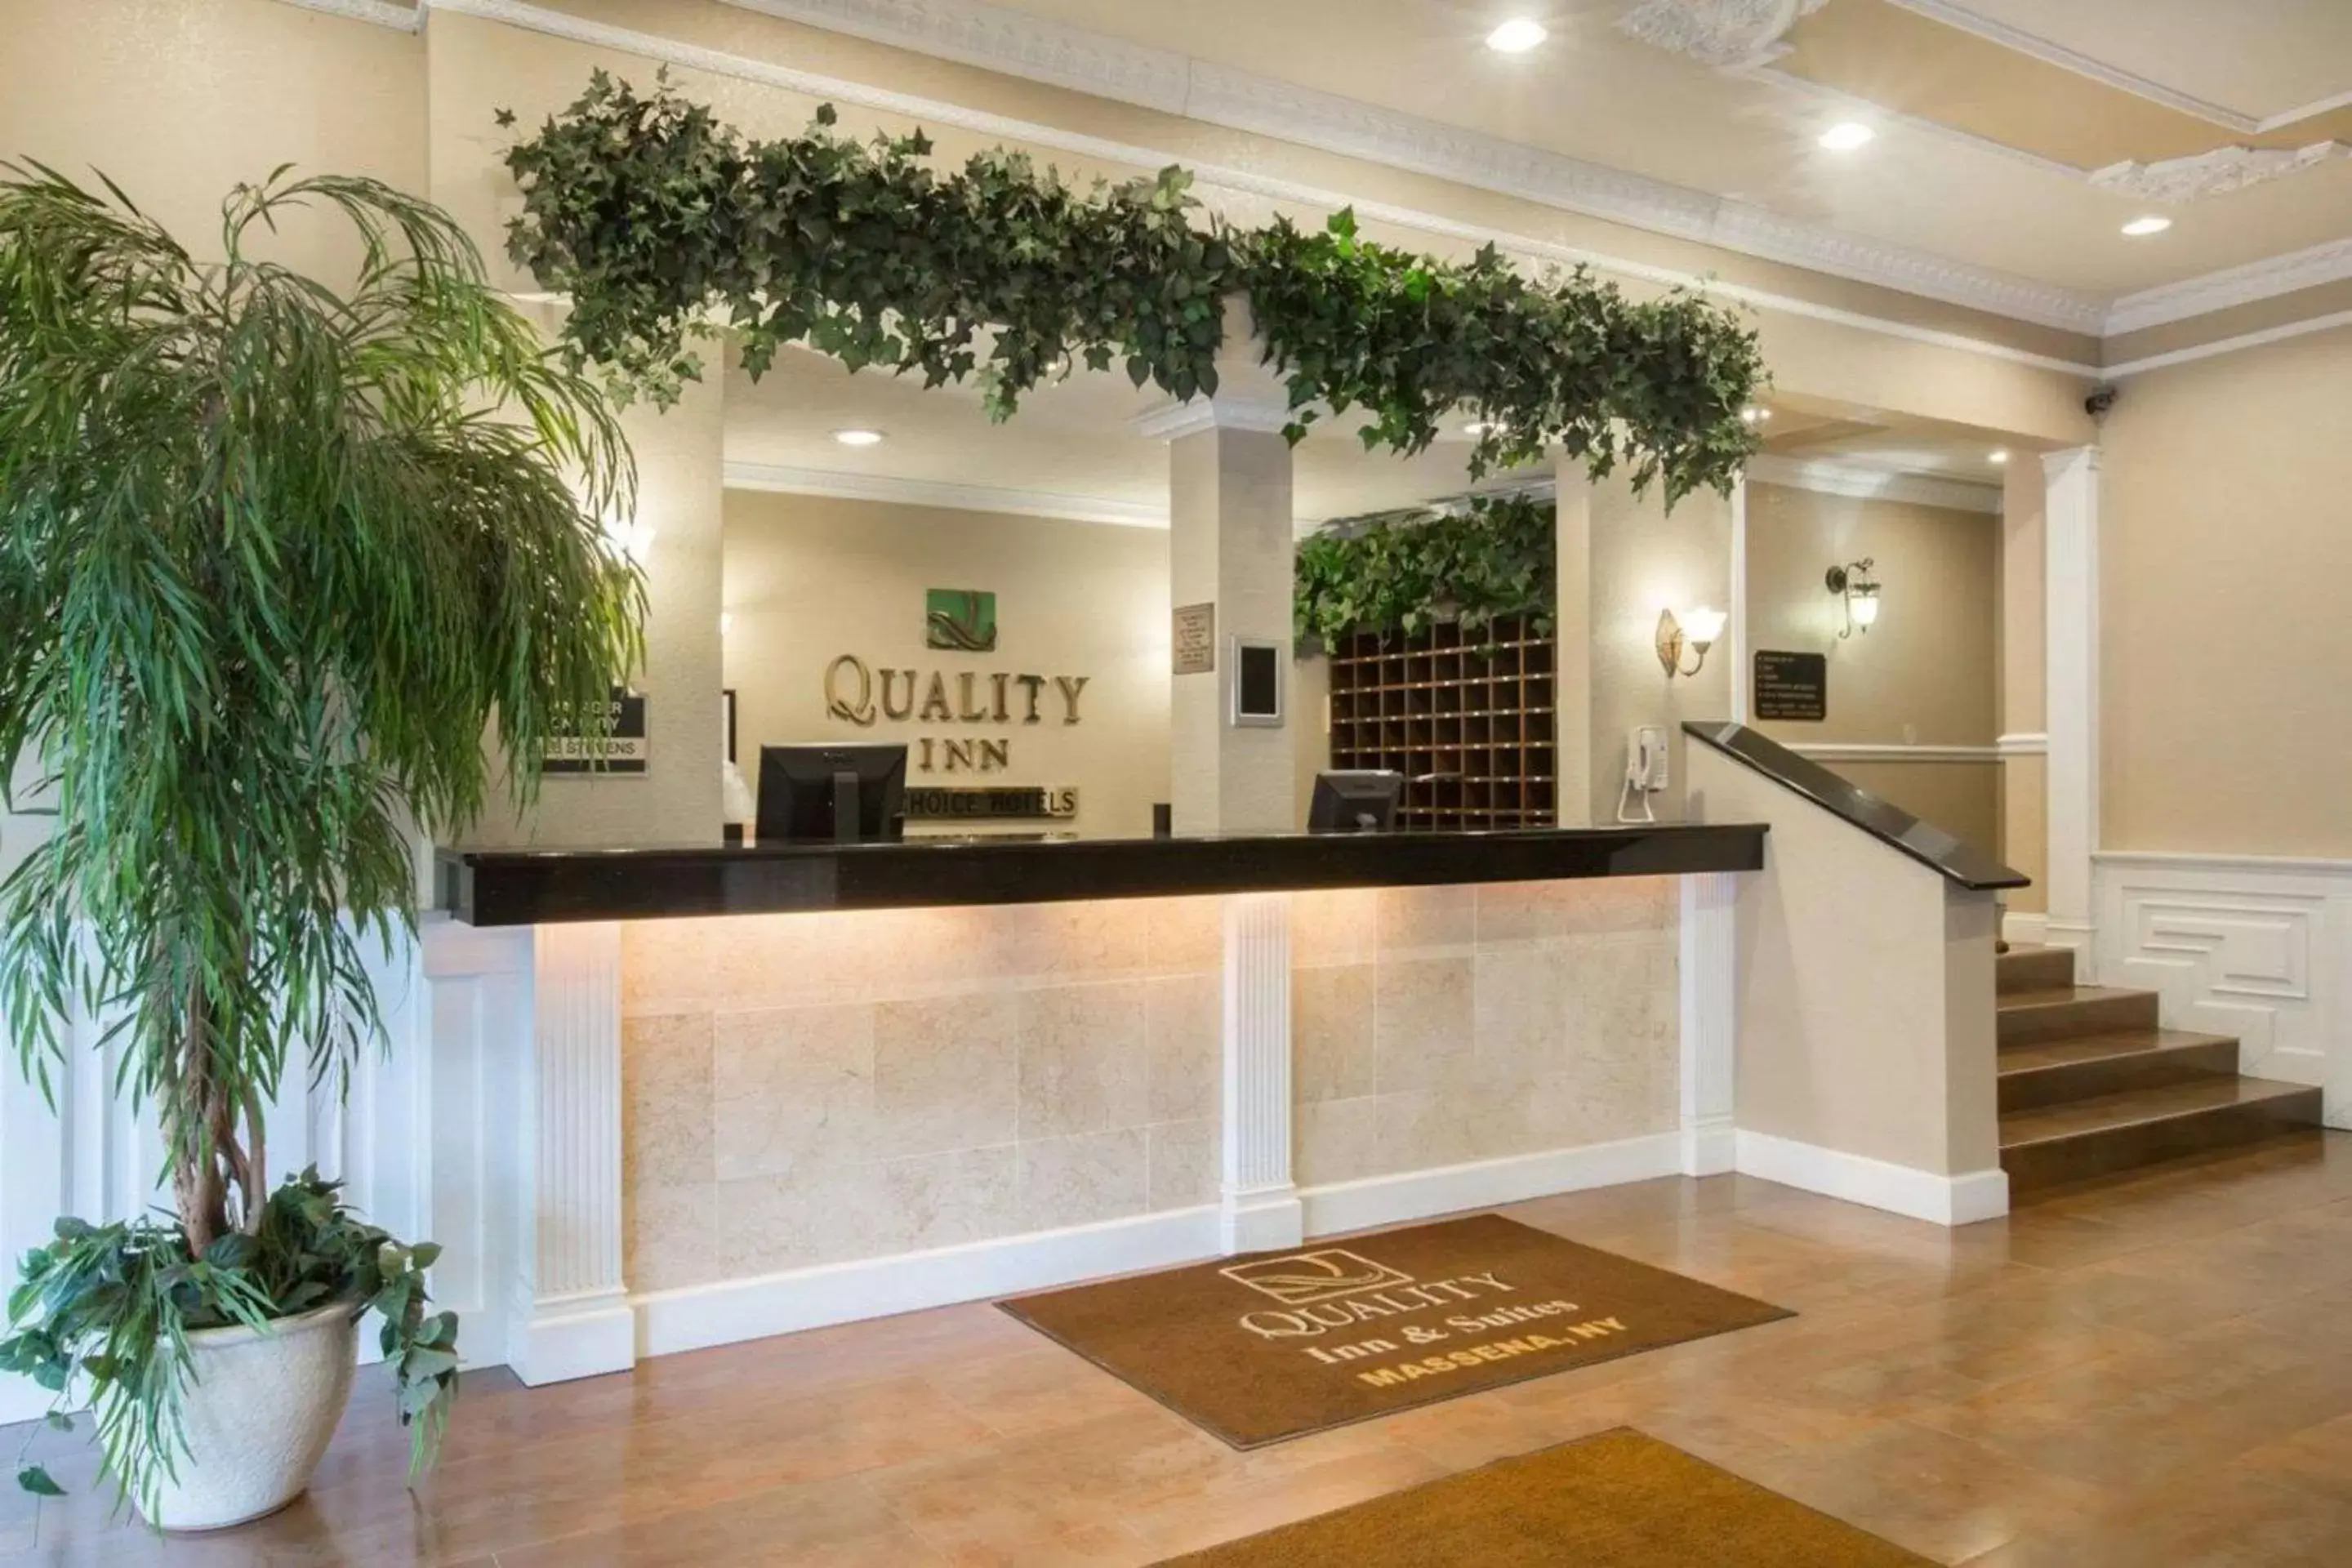 Lobby or reception, Lobby/Reception in Quality Inn Massena